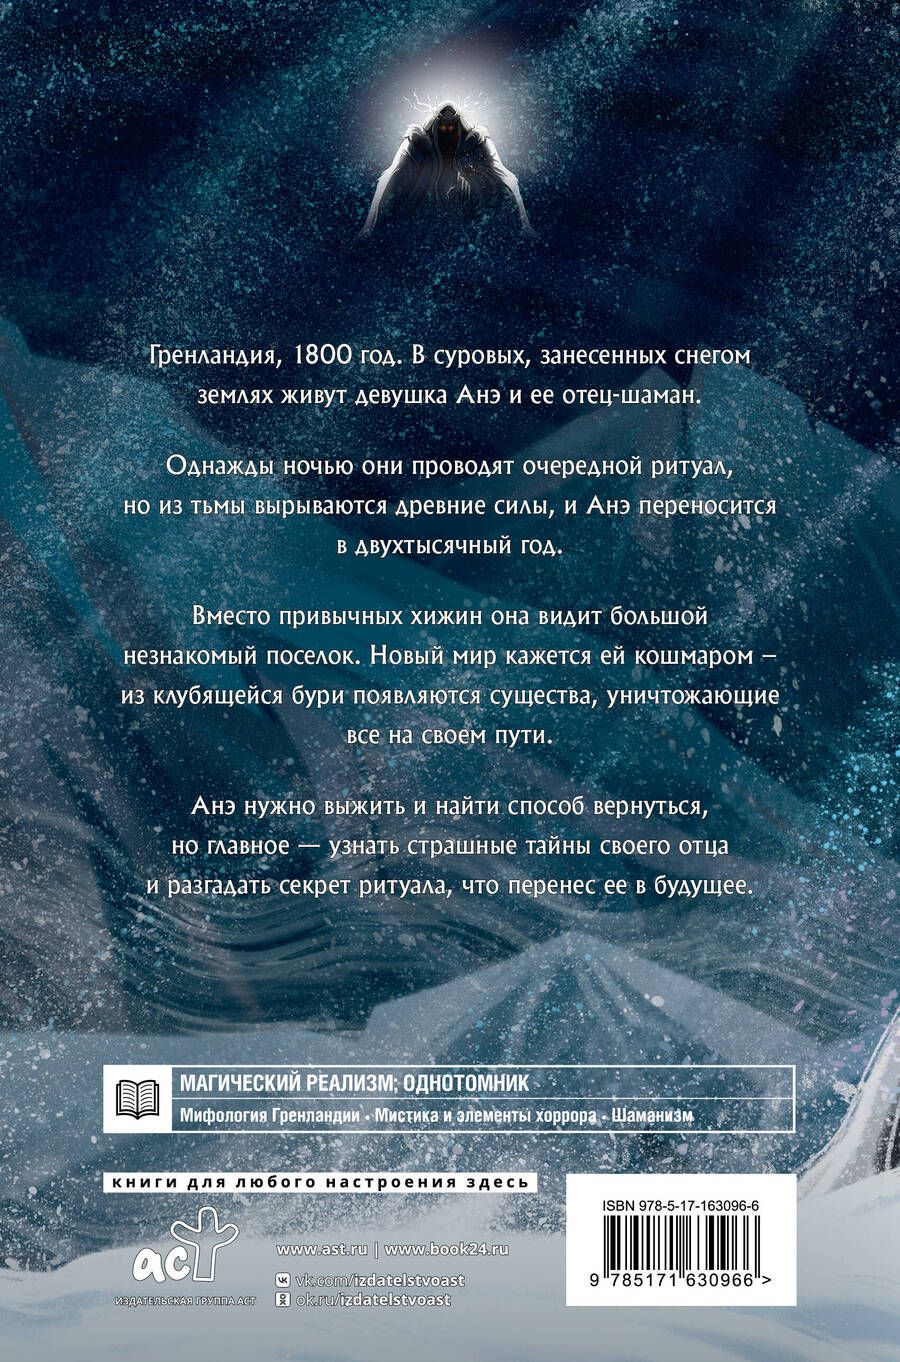 Обложка книги "Анастасия Вайолет: Вечный сон"